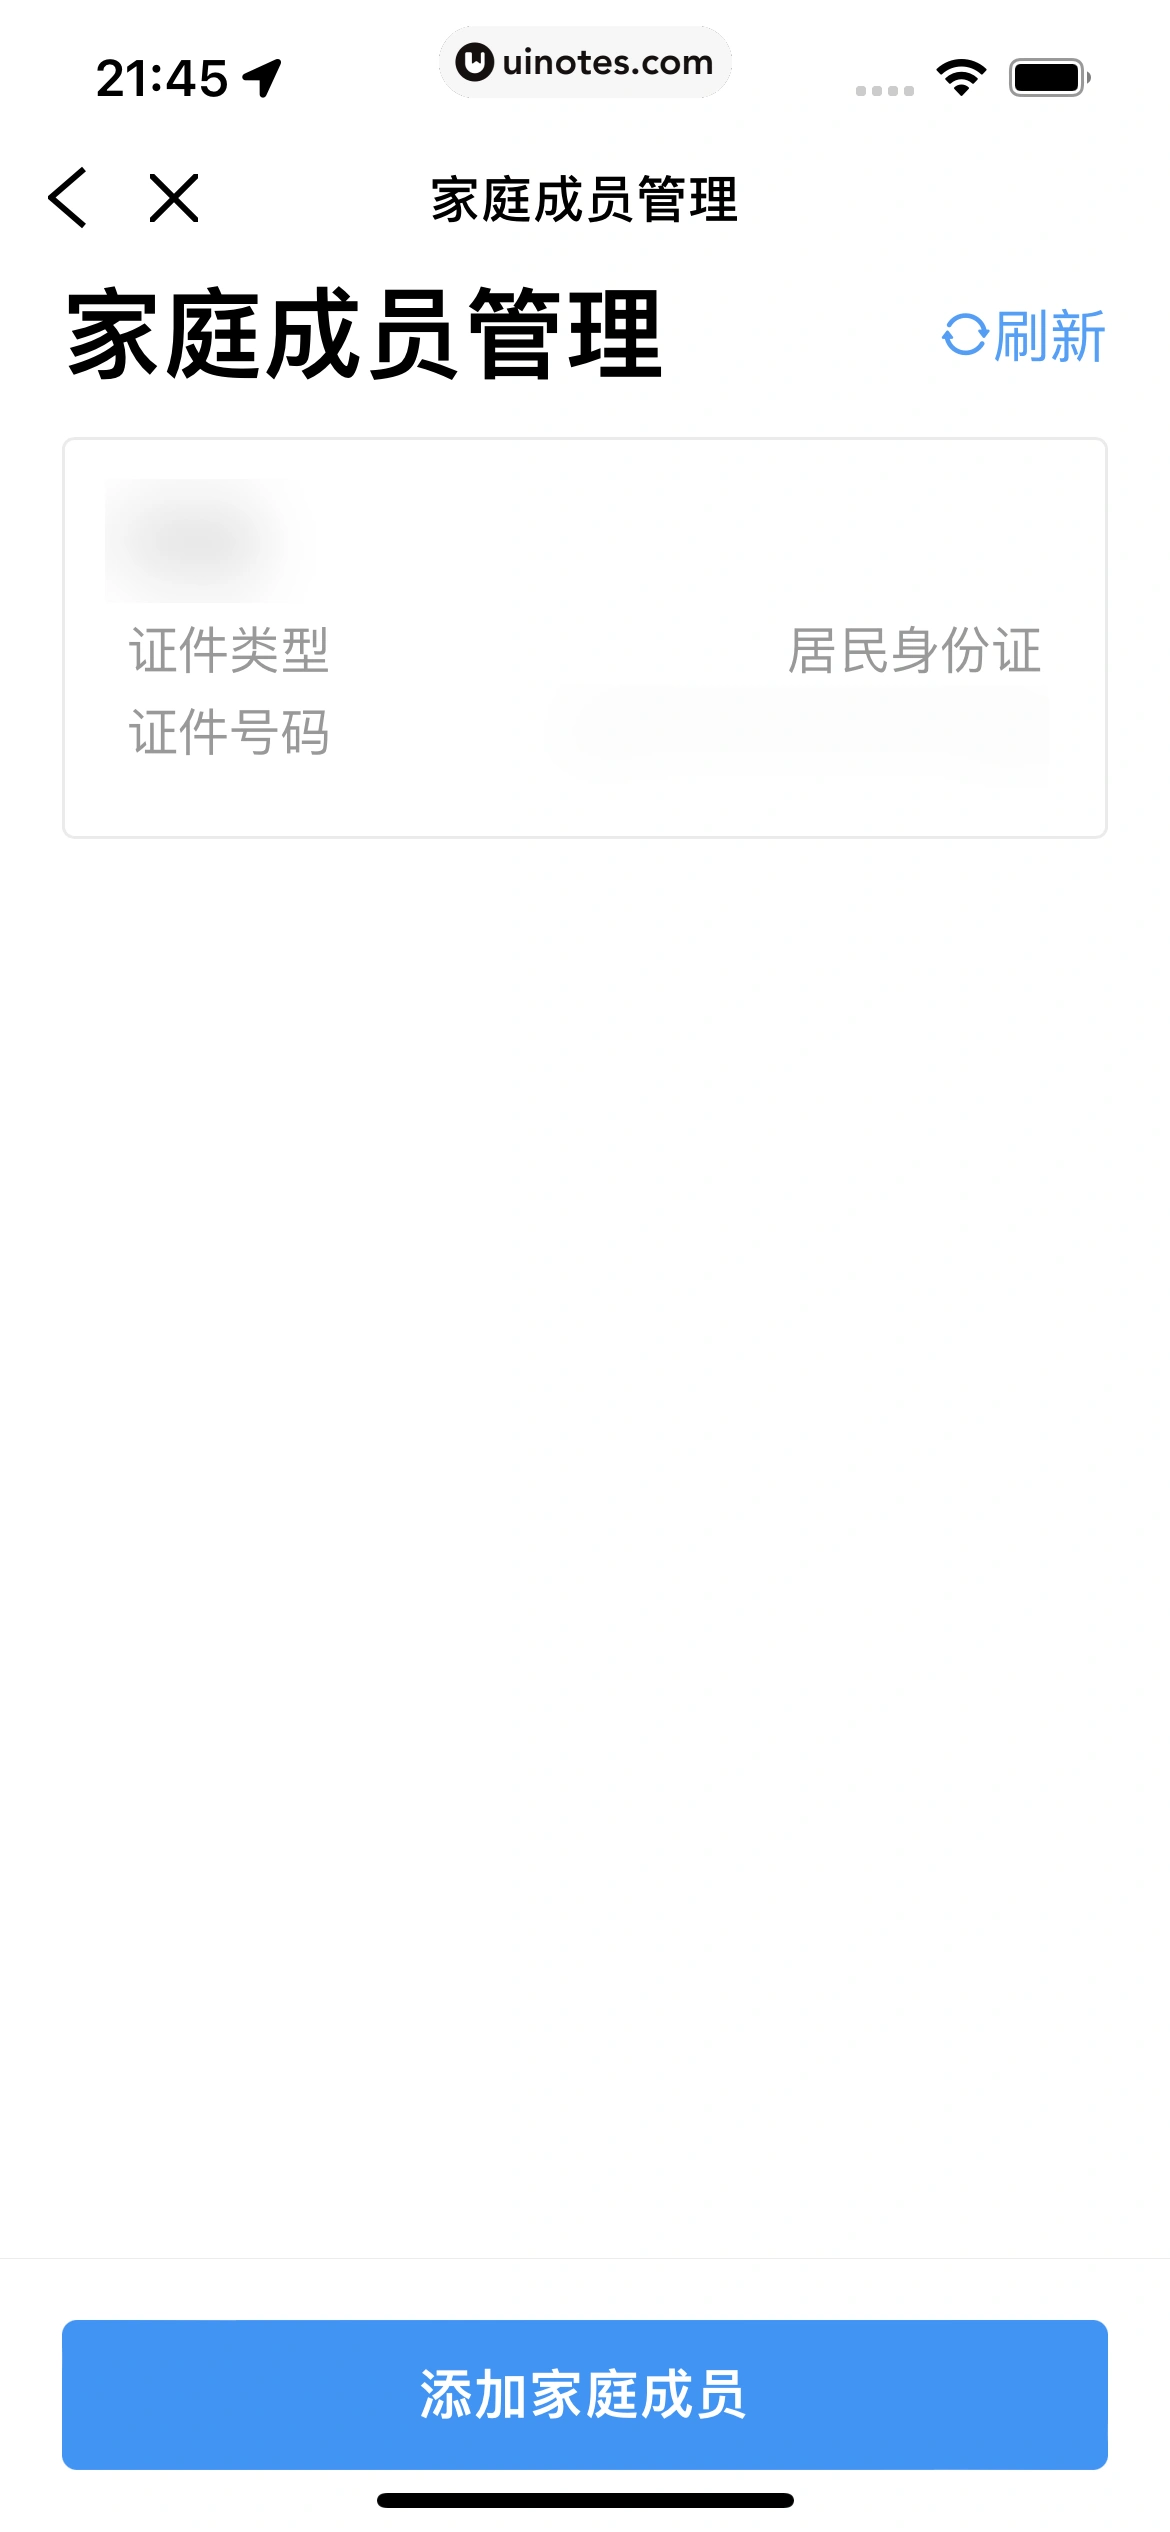 粤省事 App 截图 033 - UI Notes